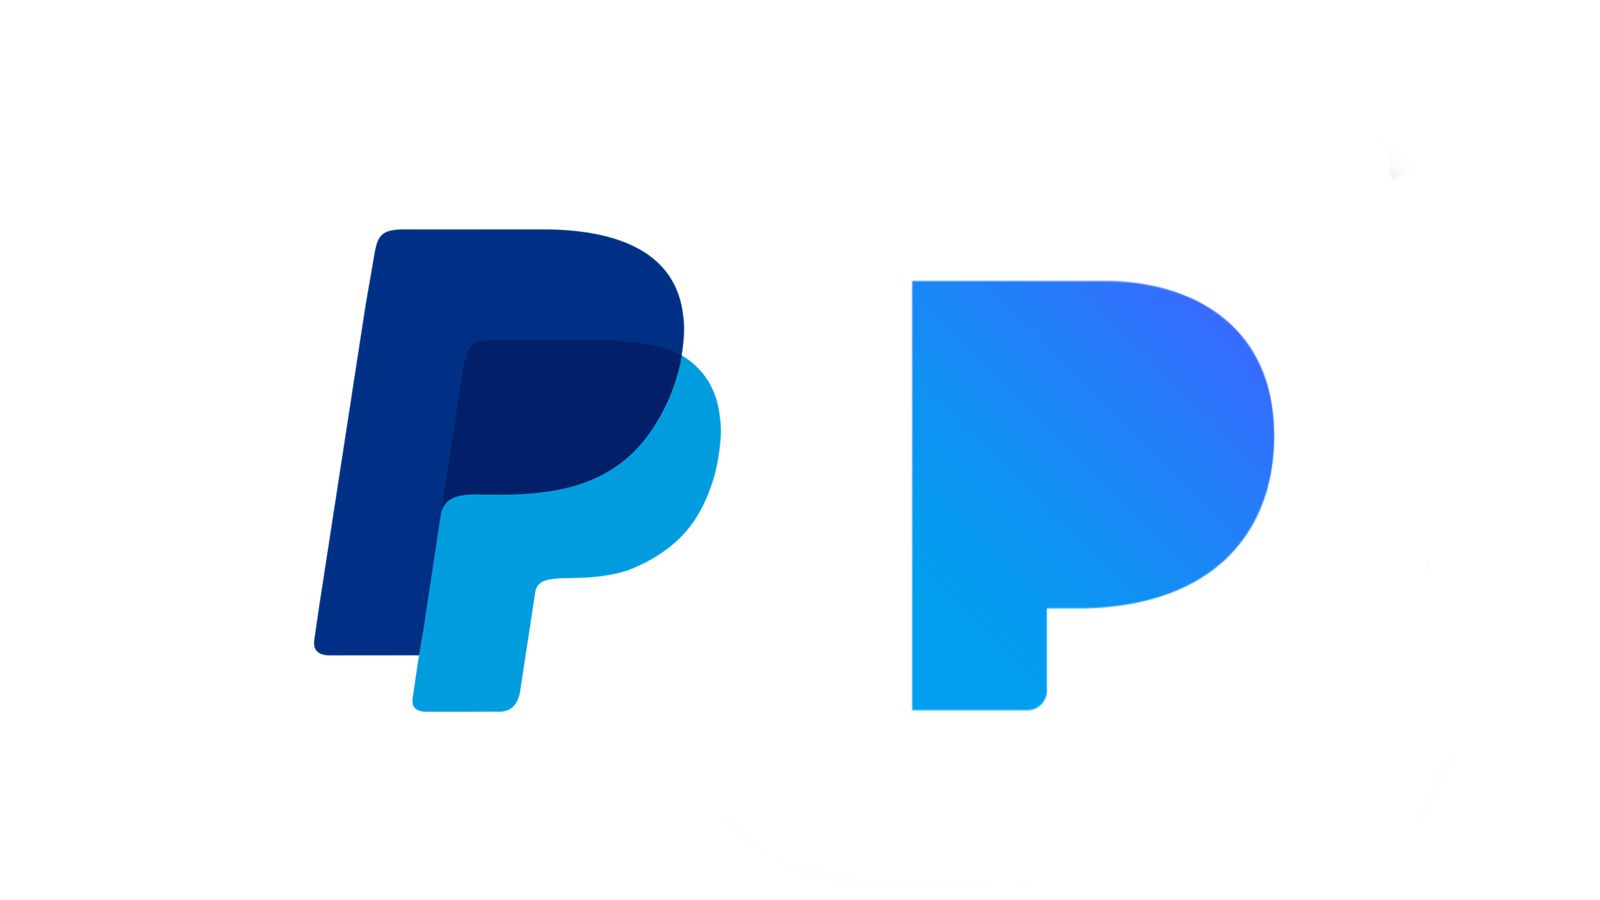 pandora_paypal_logo_battle.0.jpg